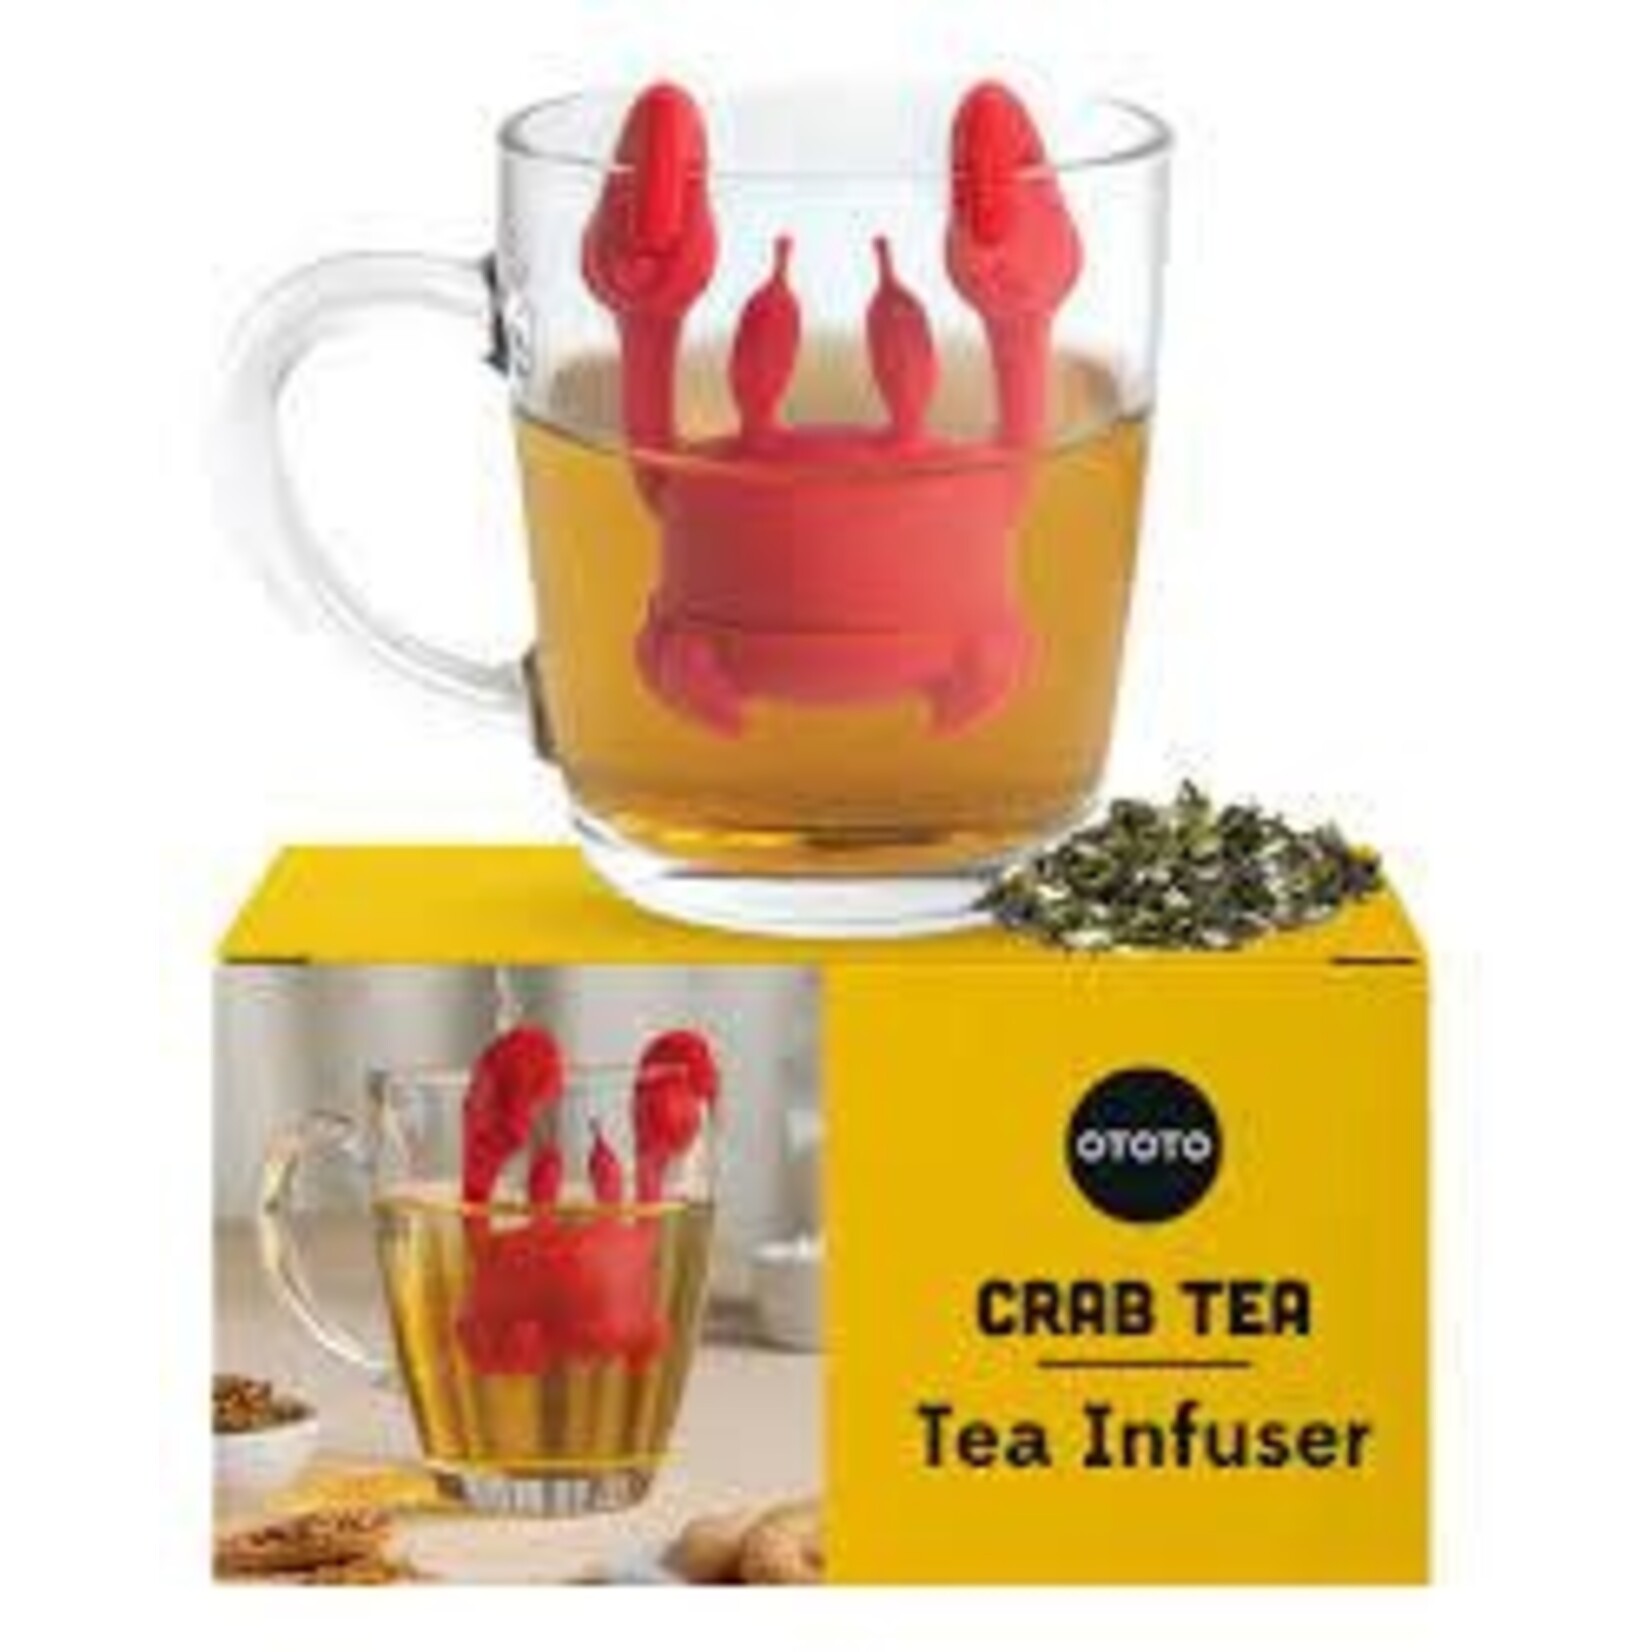 Diverse Merken Thee ei crab tea Ototo crab tea tea infuser Ototo ot973